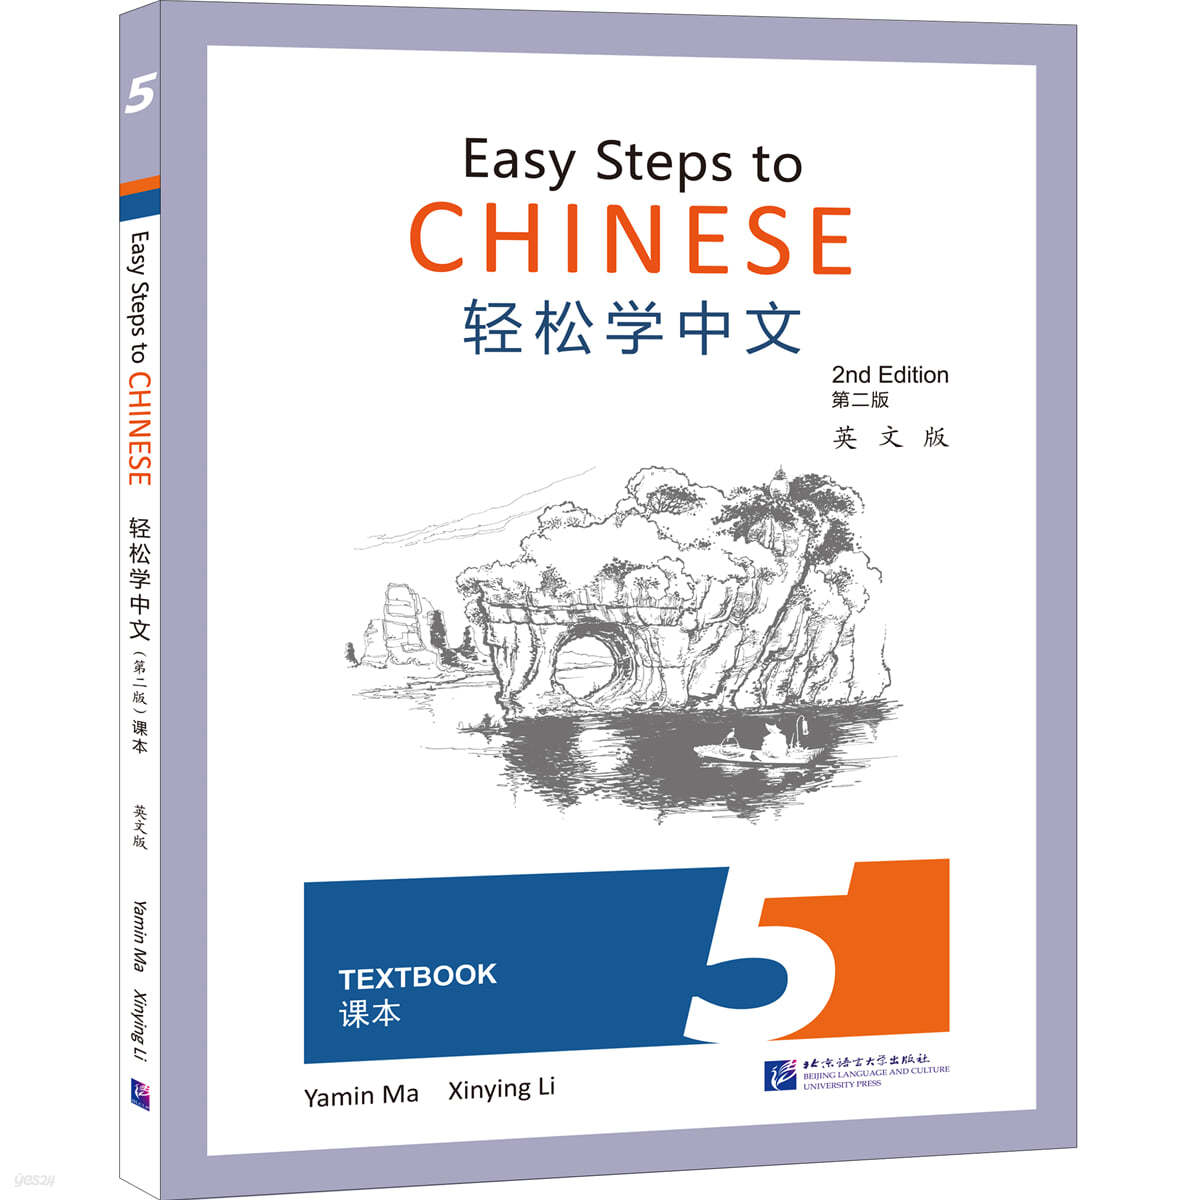 경송학중문 (제2판) 과본 5 영문판 輕松學中文（第二版）（英文版）課本5 Easy Steps to Chinese